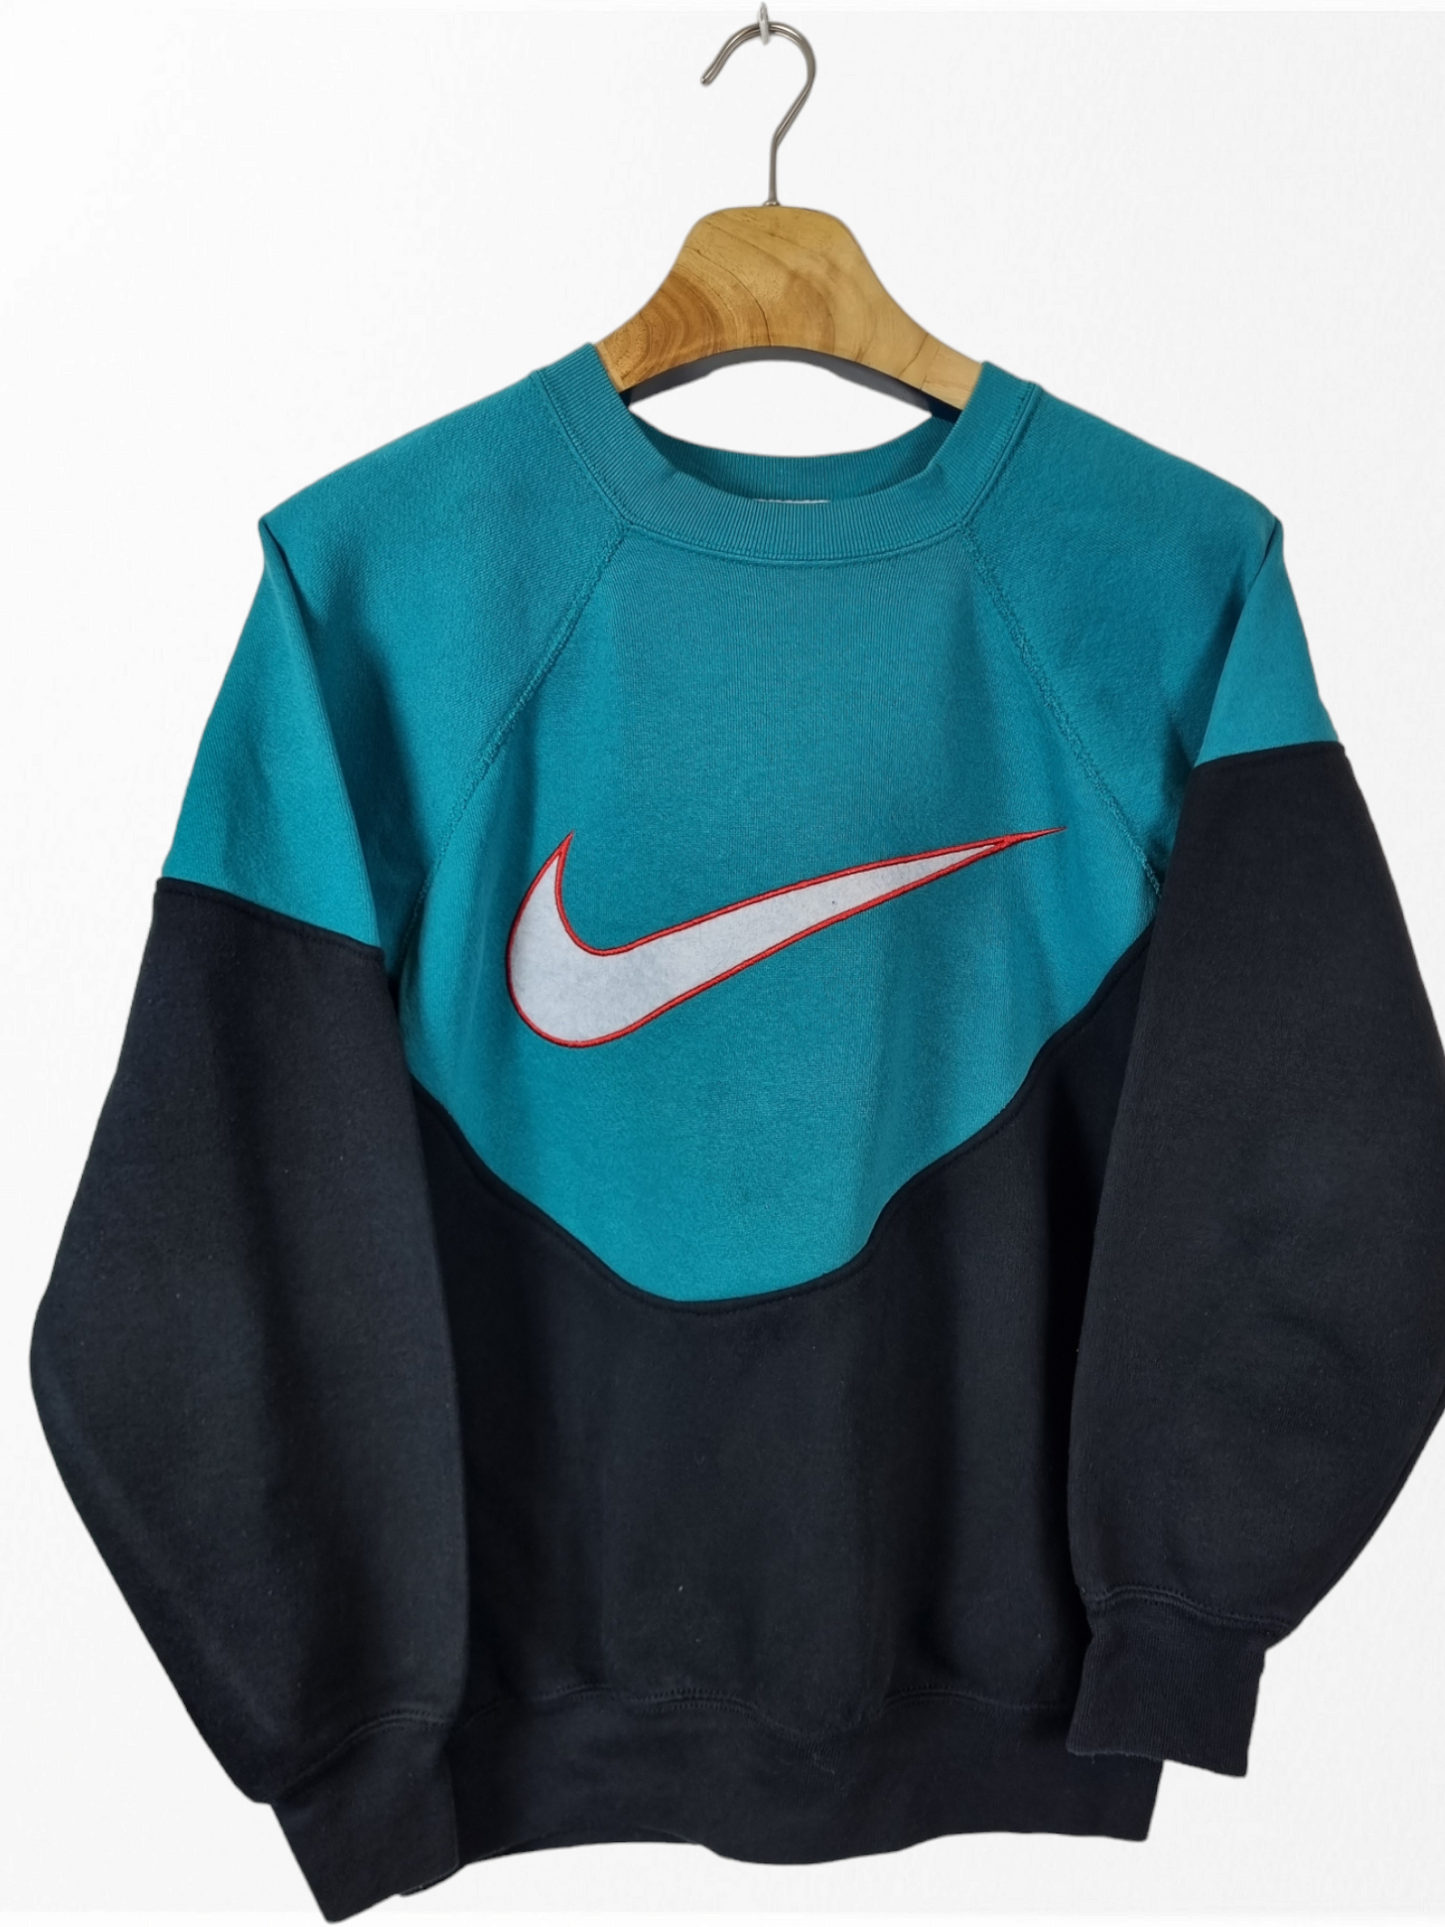 Nike Big Swoosh sweater maat S/M